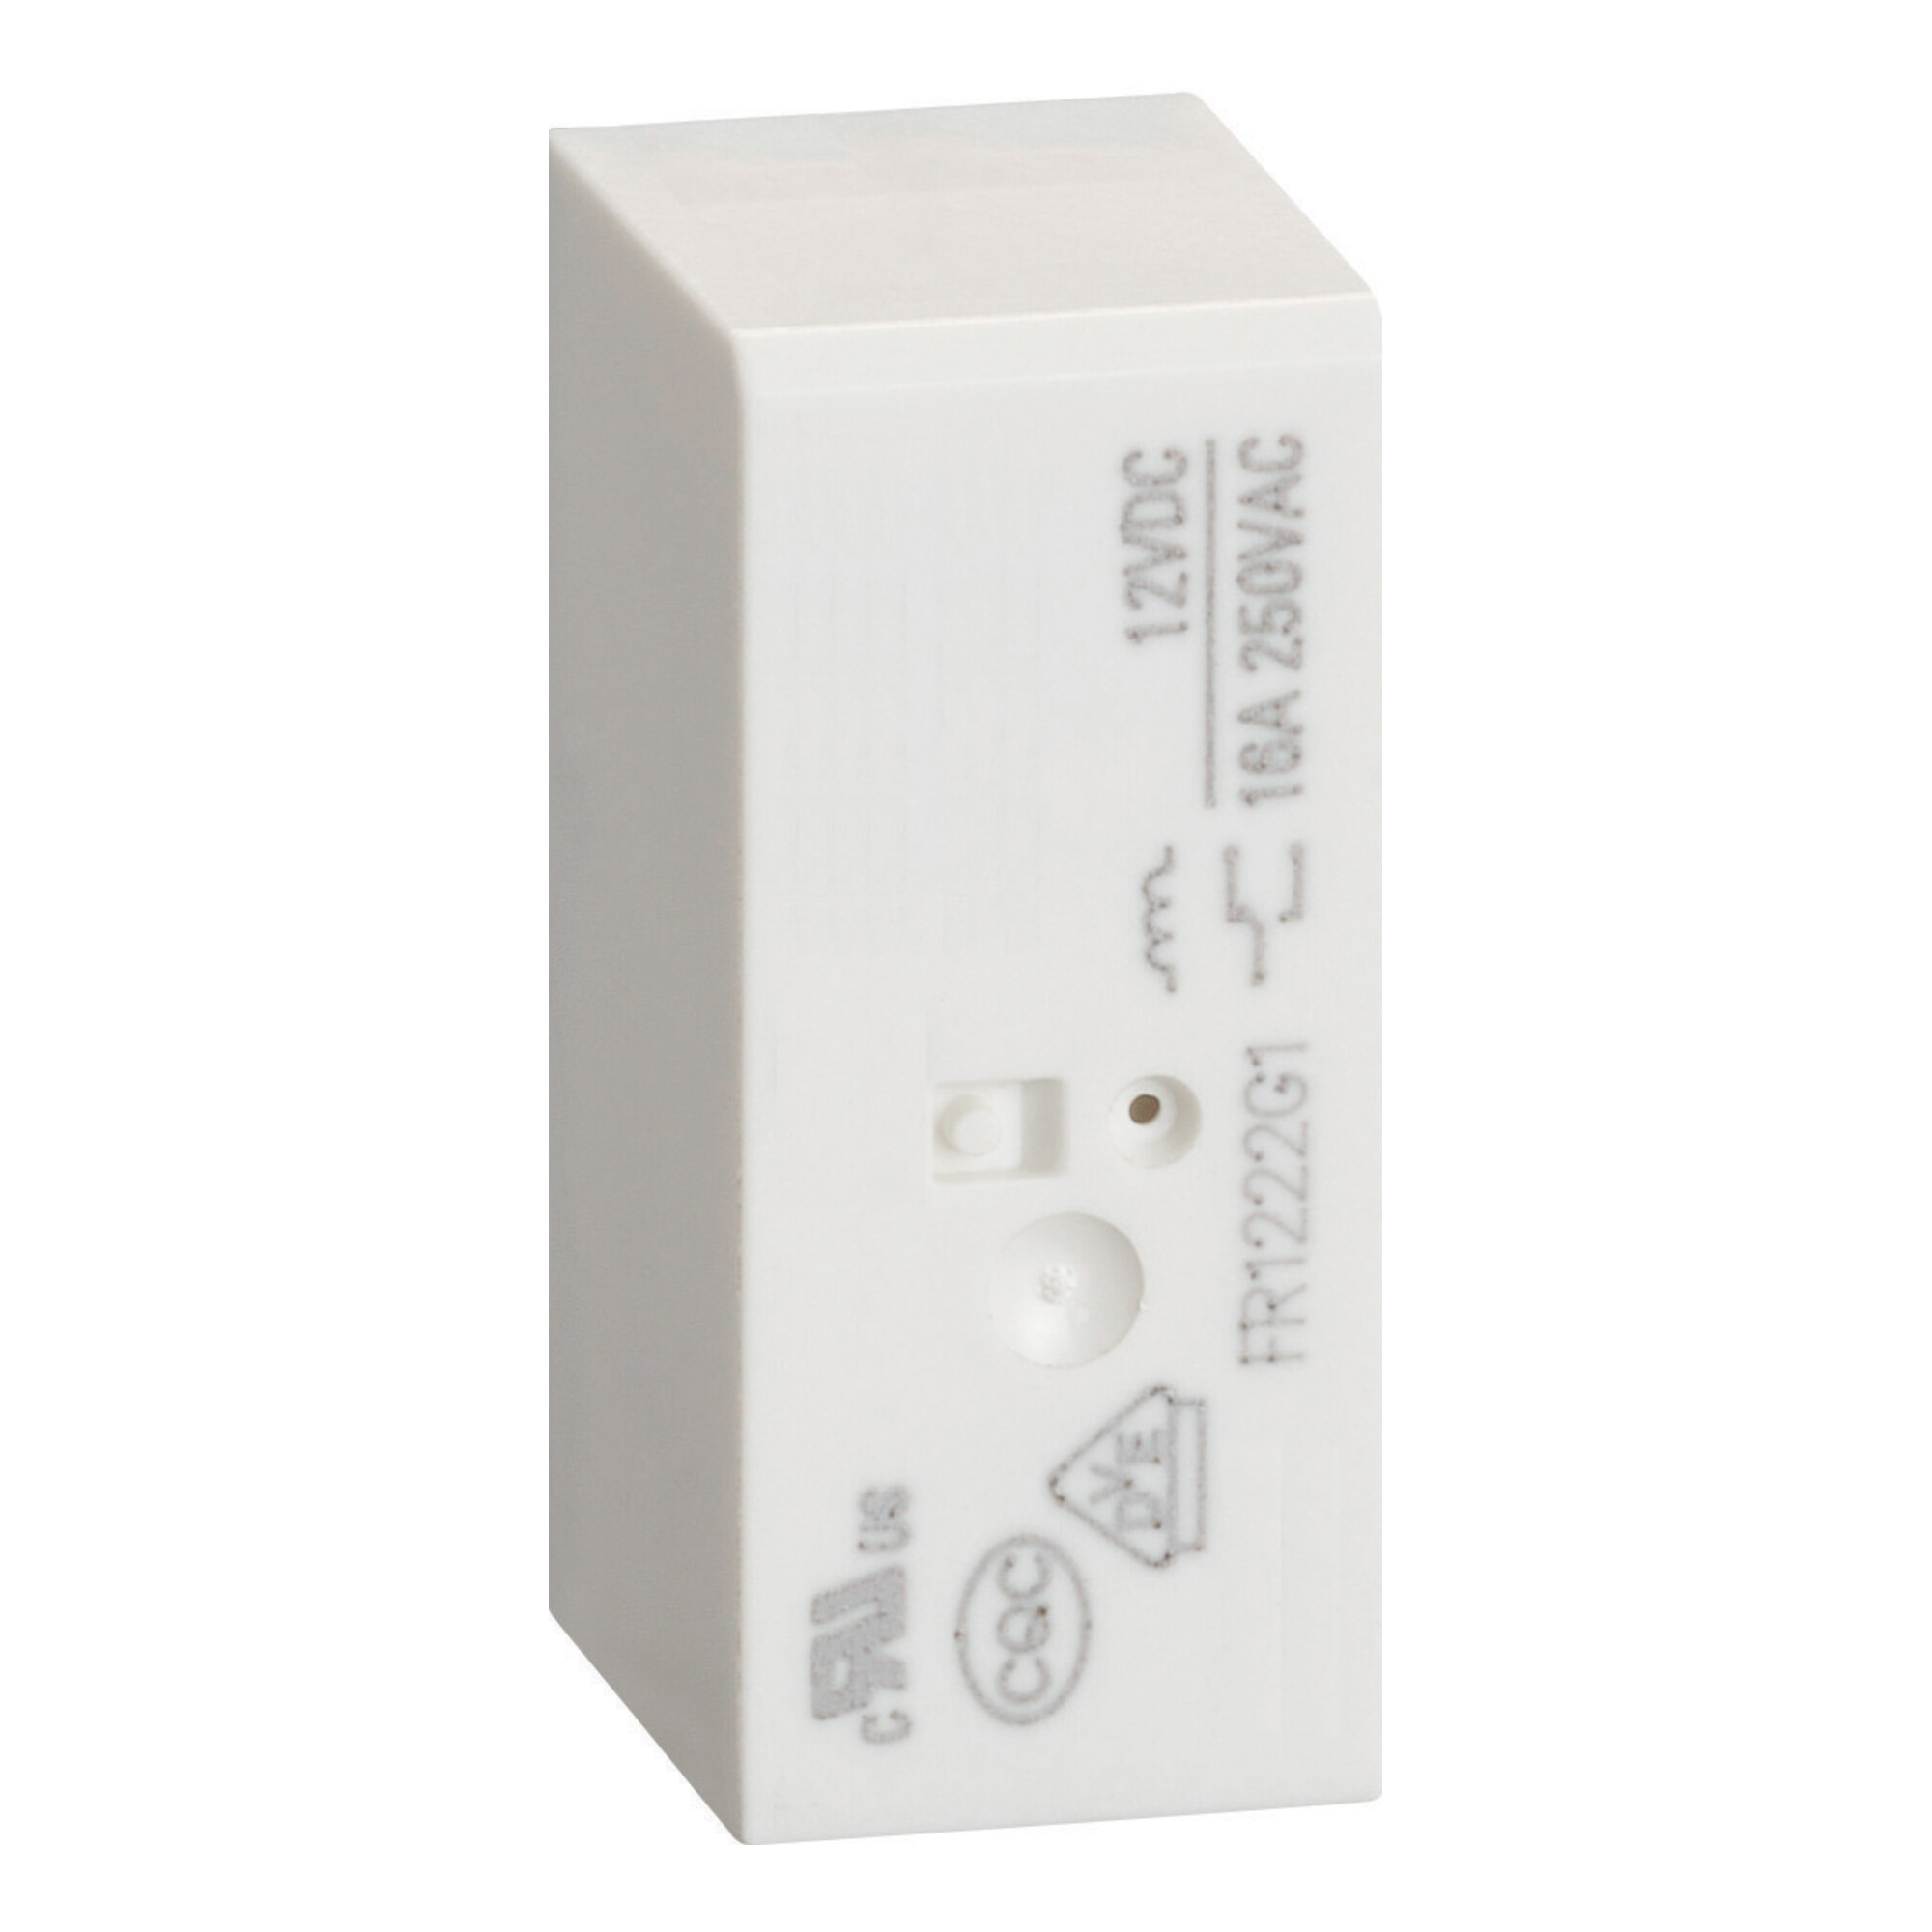 60-HR301CA024 Insteekrelais (mini) HR30 Miniatuur relais, geschikt voor 1 of 2 wisselcontacten.
Max. 10A (16A op PCB), beschikbaar in AC of DC.
Voet breedte 15,8mm.